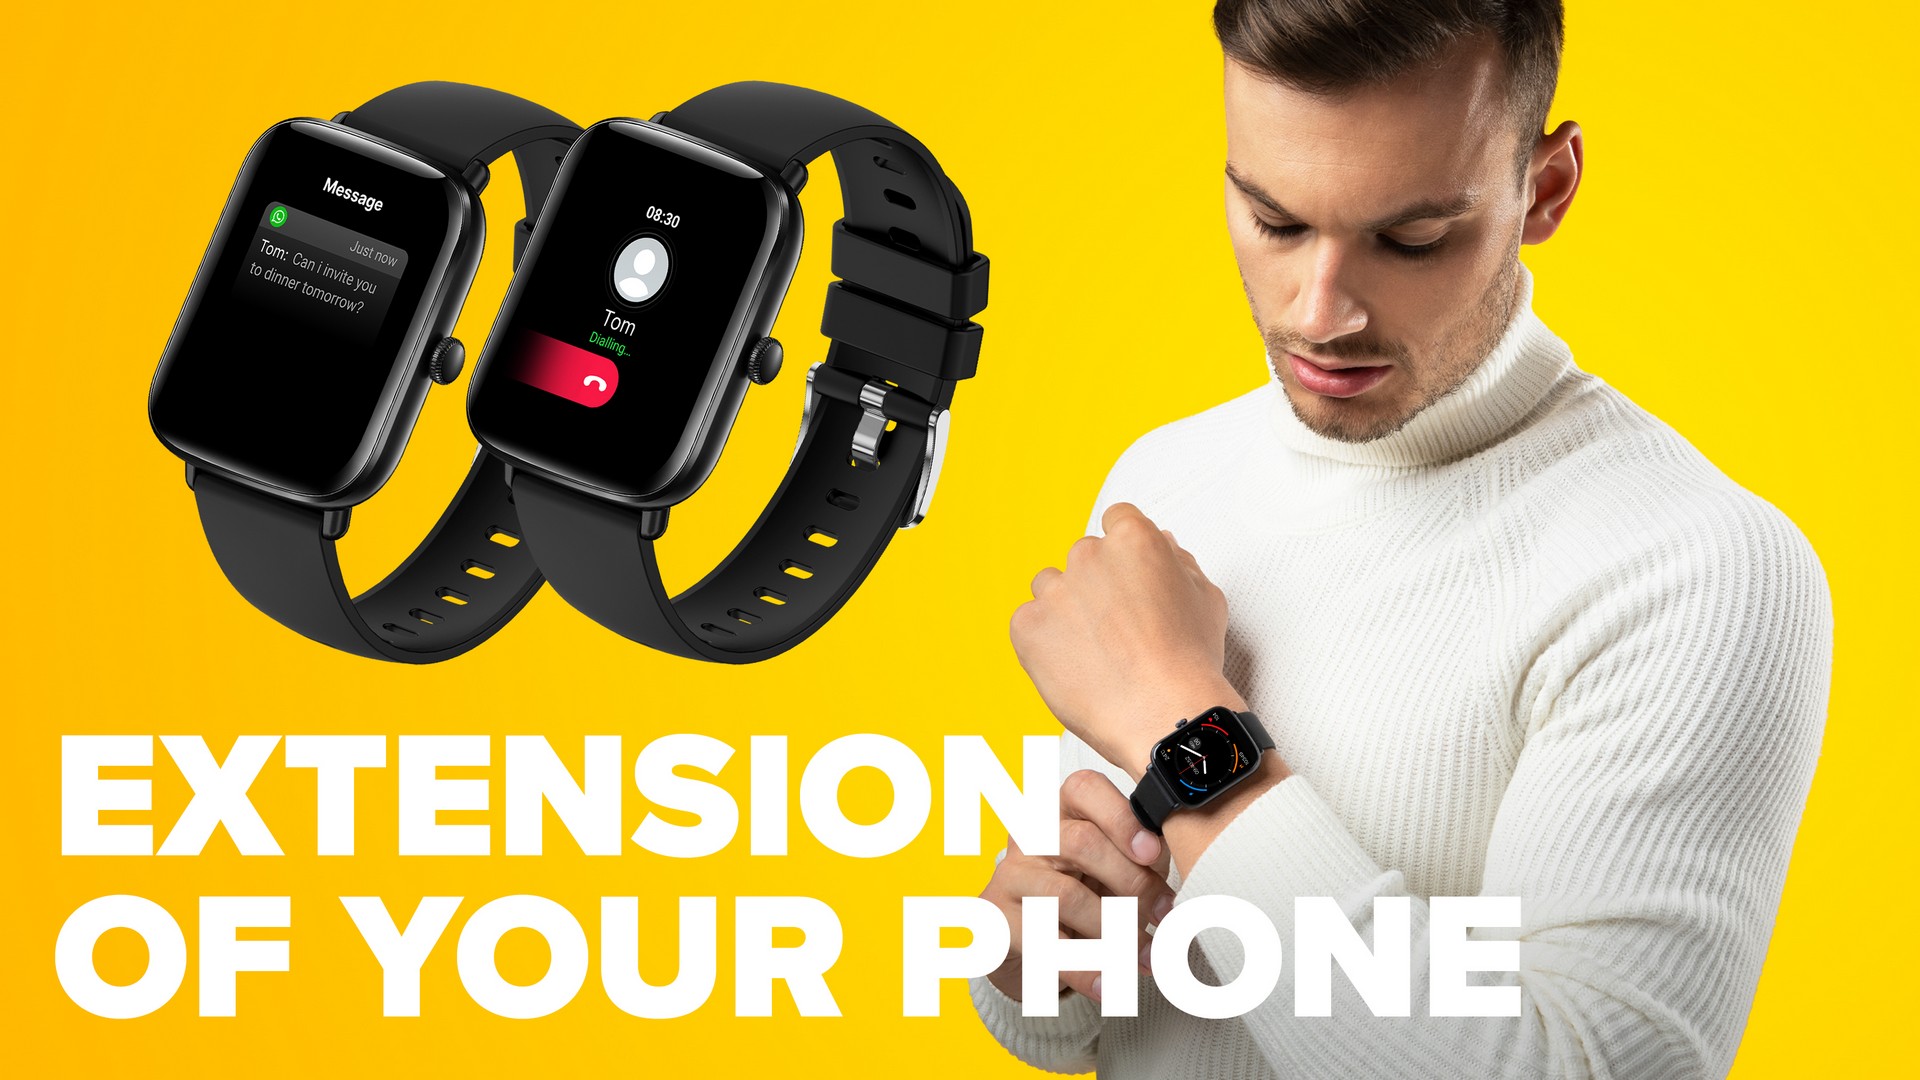 Chytré hodinky Niceboy Watch Lite 3 sú vybavené reproduktorom a mikrofónom pre vybavovanie telefónnych hovorov priamo z vášho zápästia.